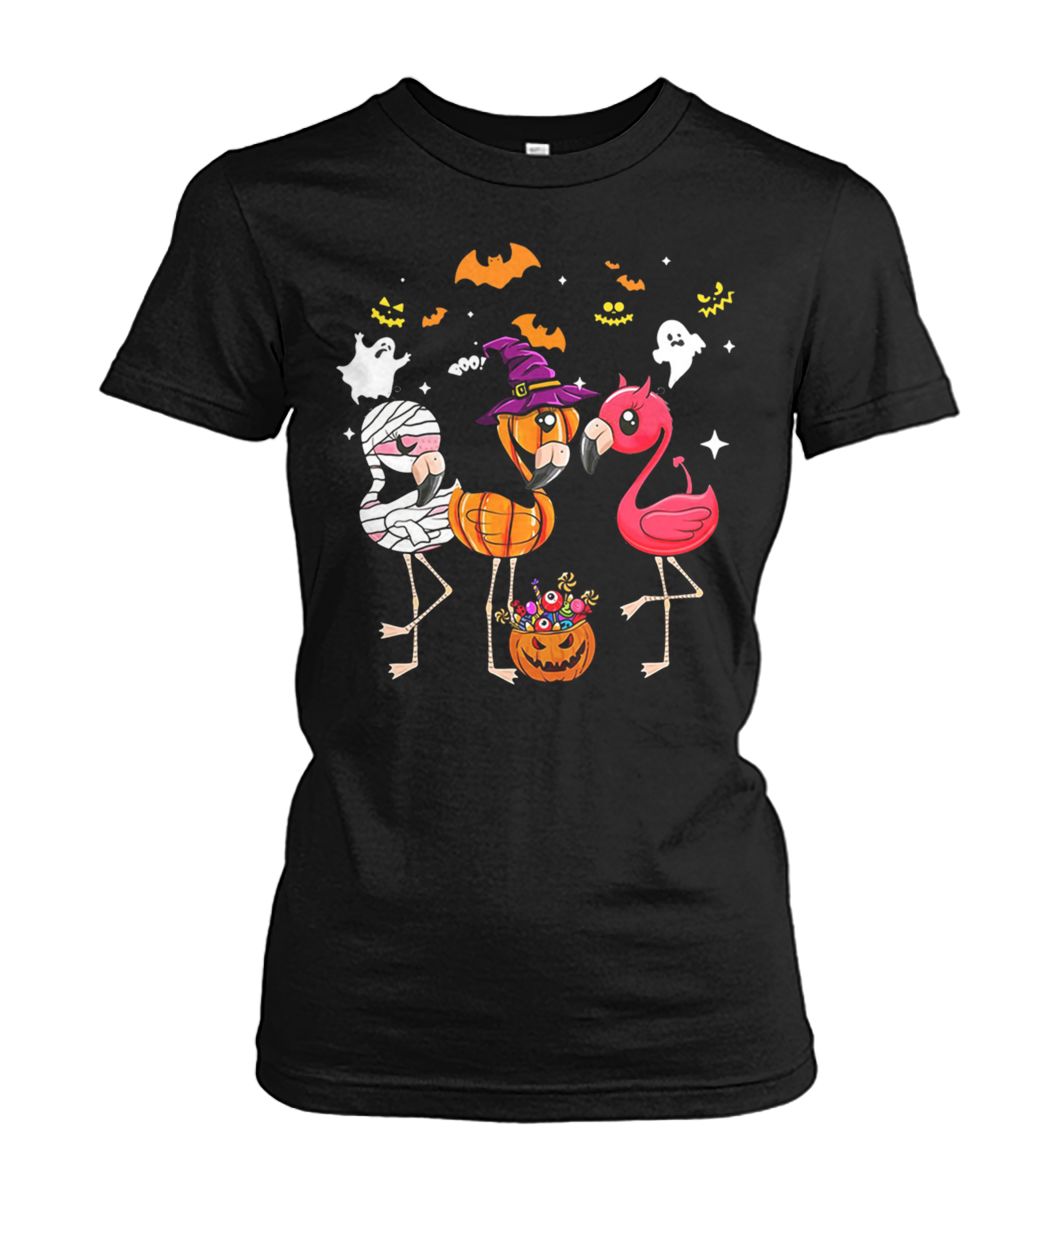 Flamingo halloween pumpkin witch ghost women's crew tee